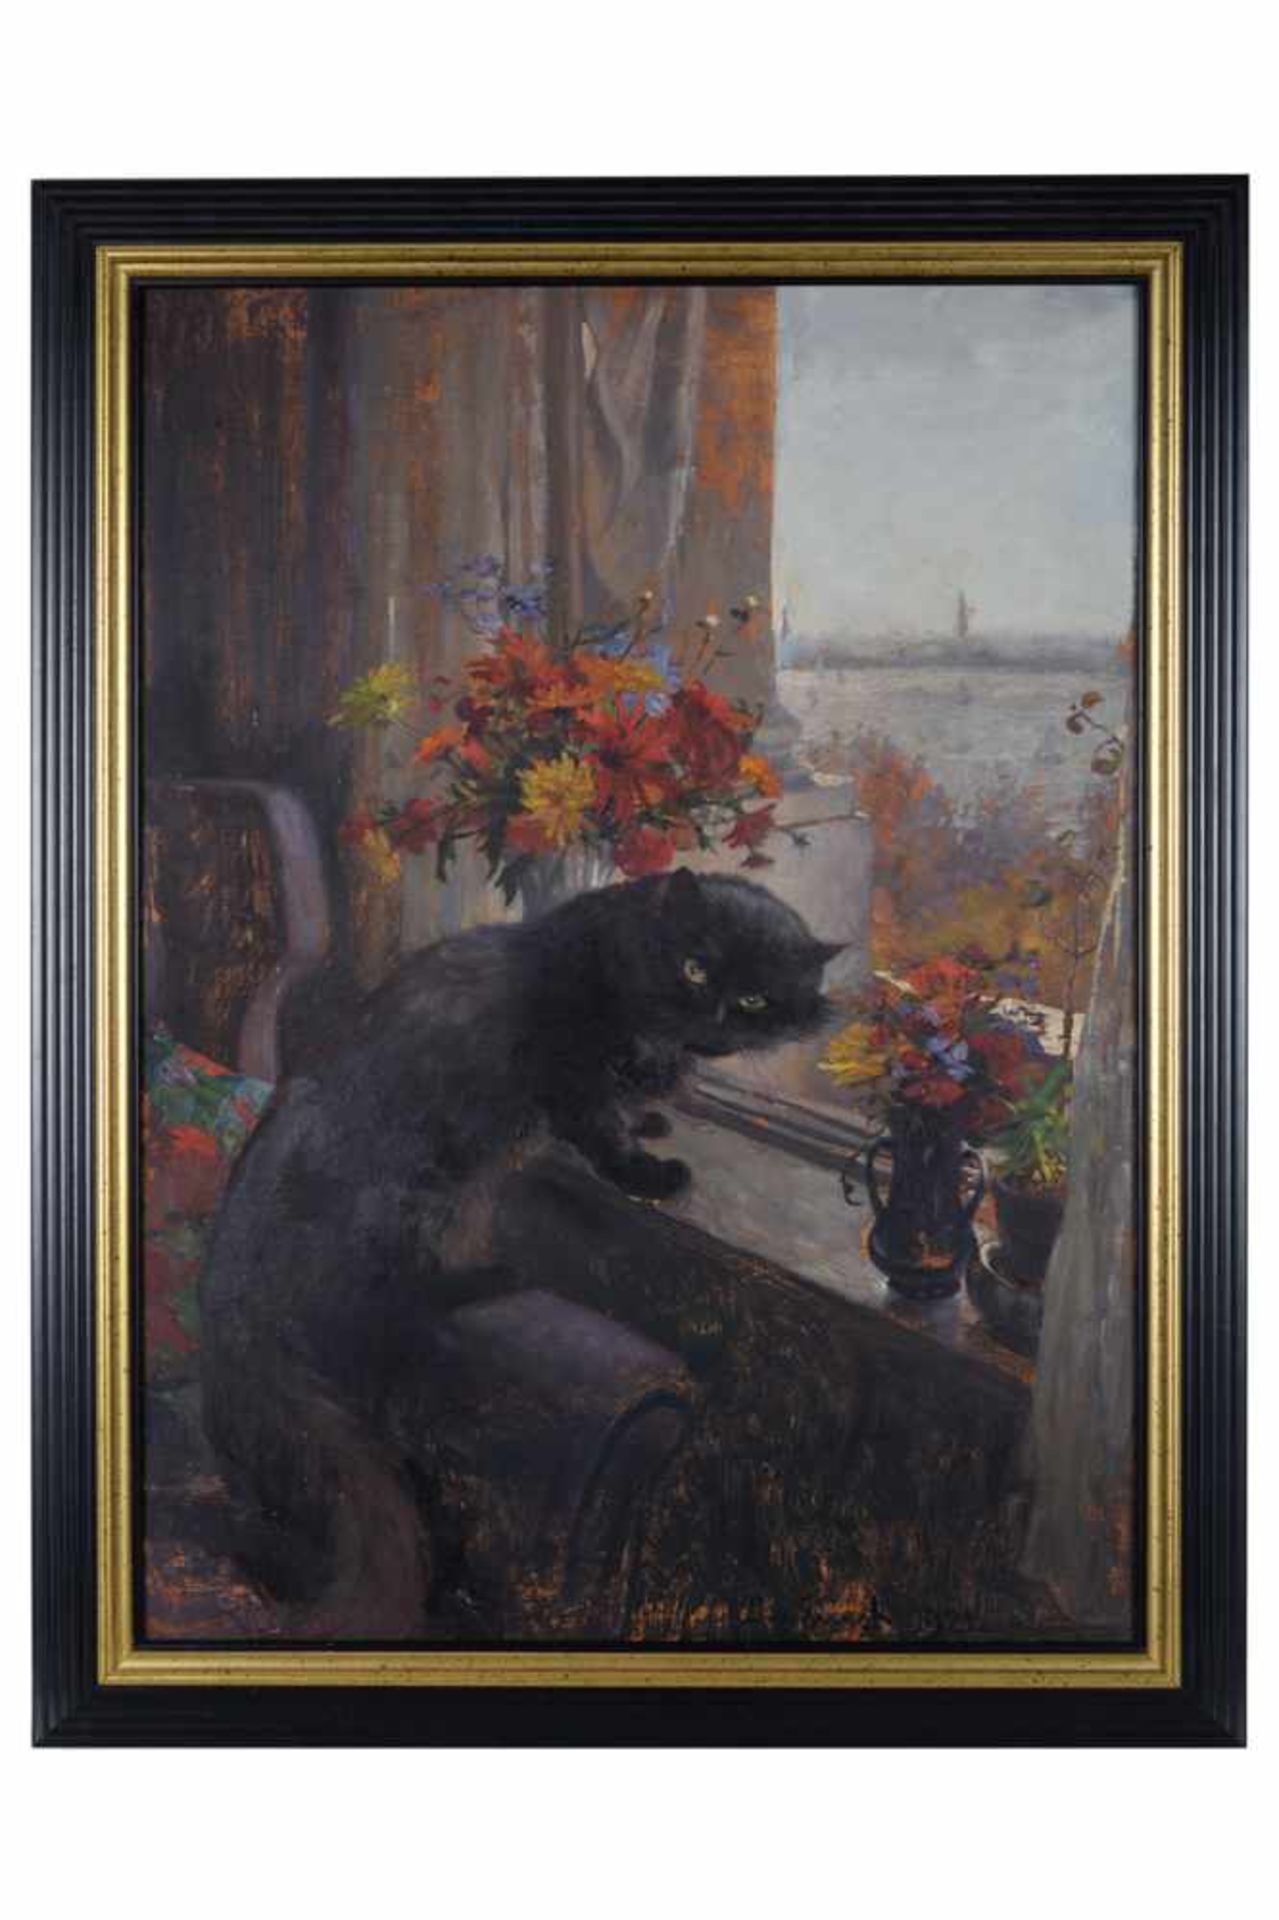 Fensterblick mit schwarzer Katze.Öl auf Karton, unten rechts signiert J. v. Ernst, datiert 1921, - Bild 2 aus 3